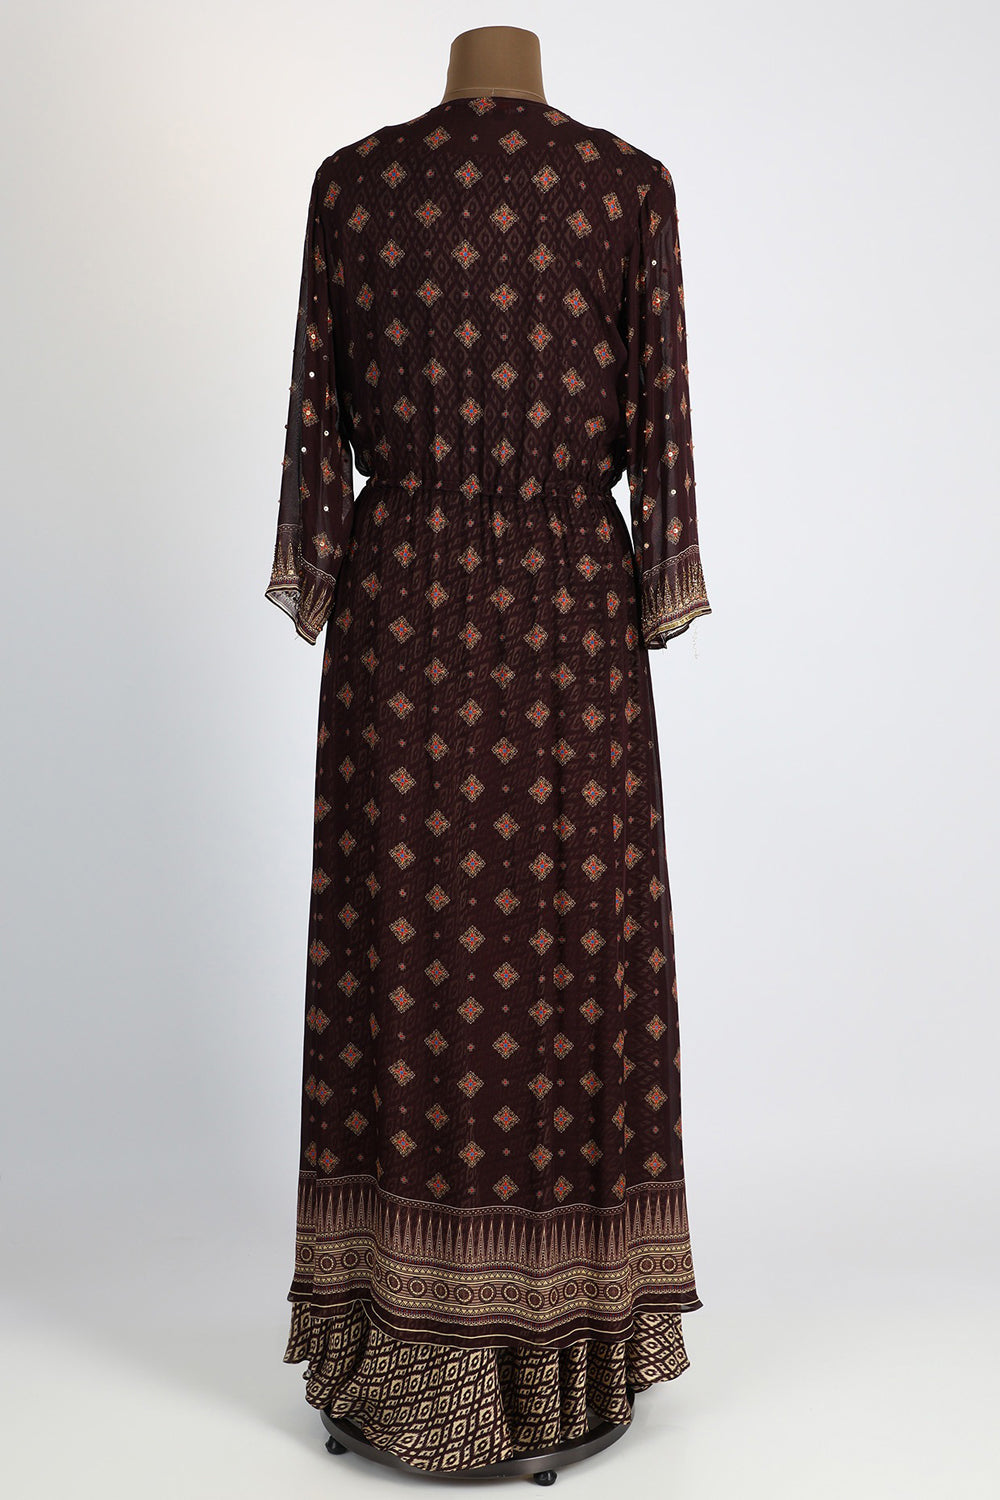 Silk Beige Printed Dress With Maroon Jacket